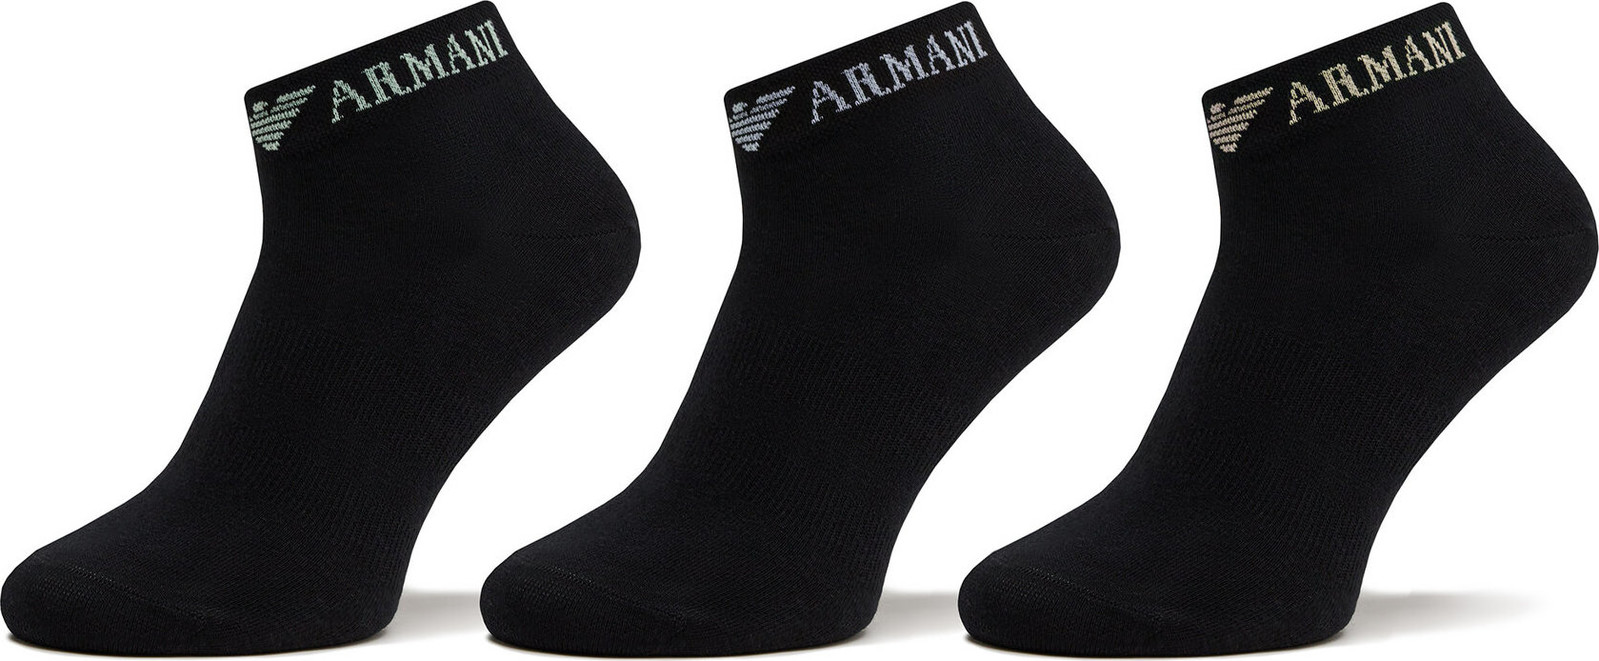 Sada 3 párů dámských nízkých ponožek Emporio Armani 300048 4R254 50620 Nero/Nero/Nero